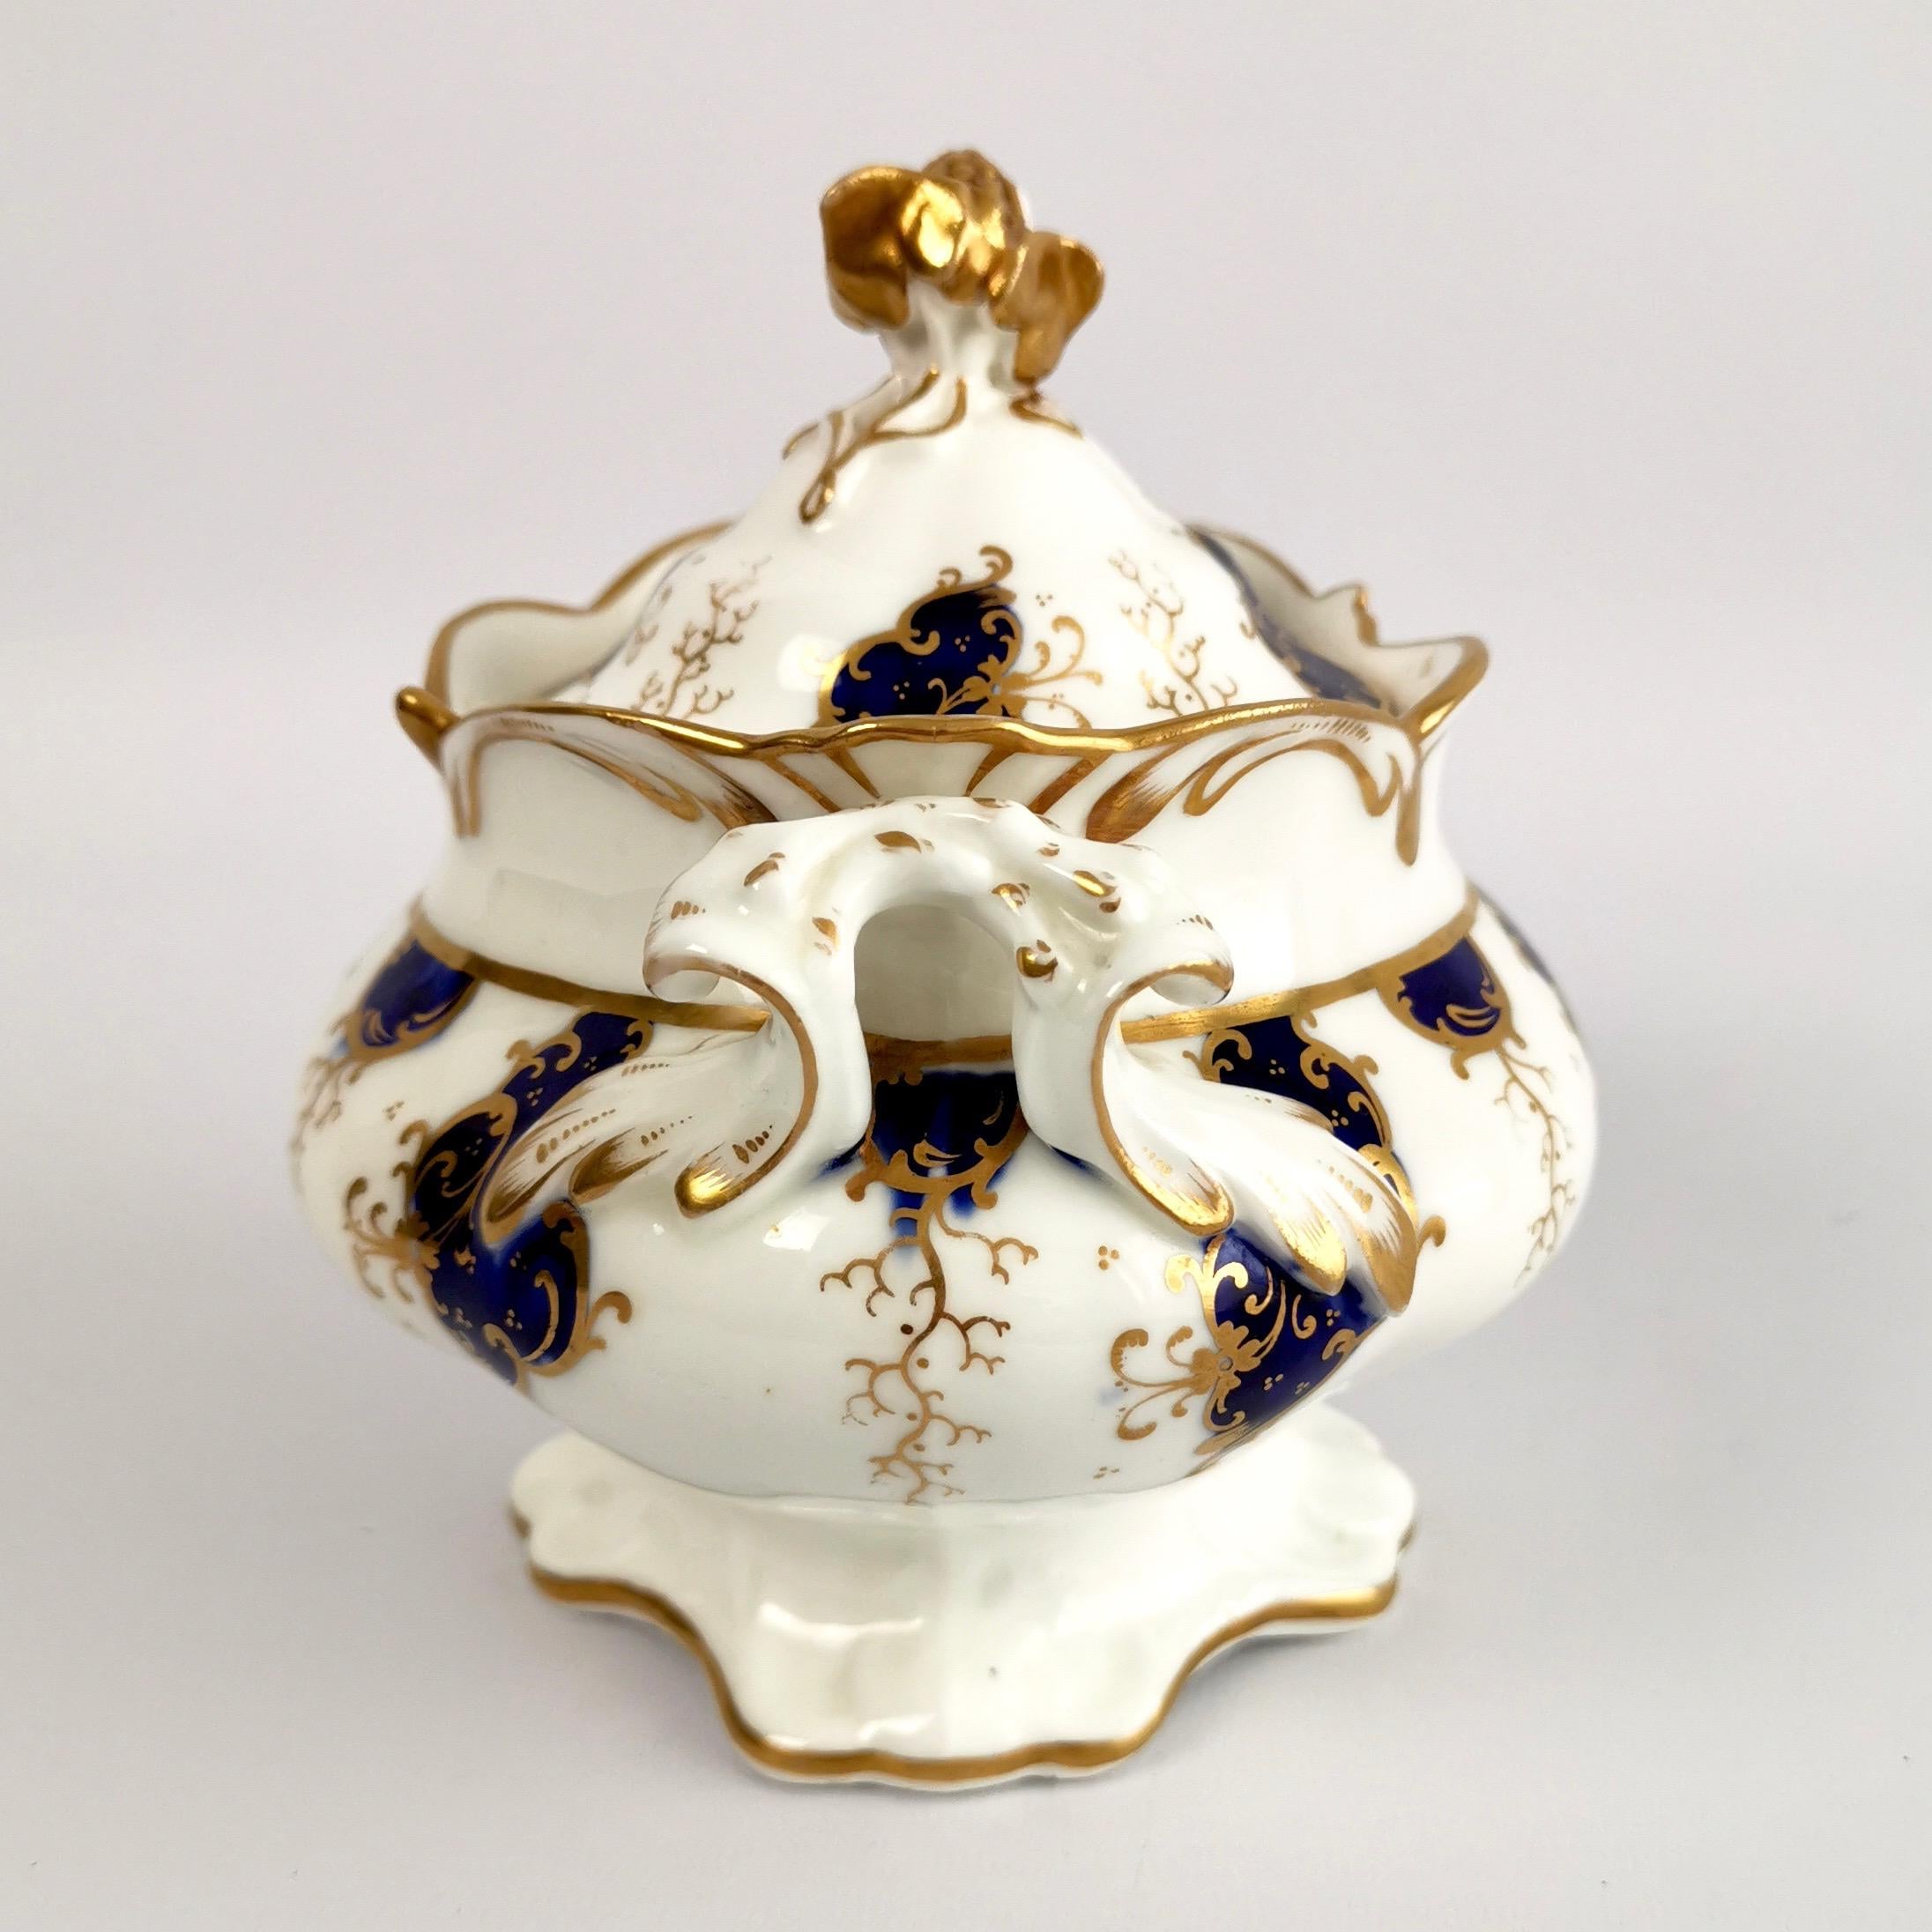 English Samuel Alcock Porcelain Sucrier, Cobalt Blue and Gilt, Rococo Revival circa 1840